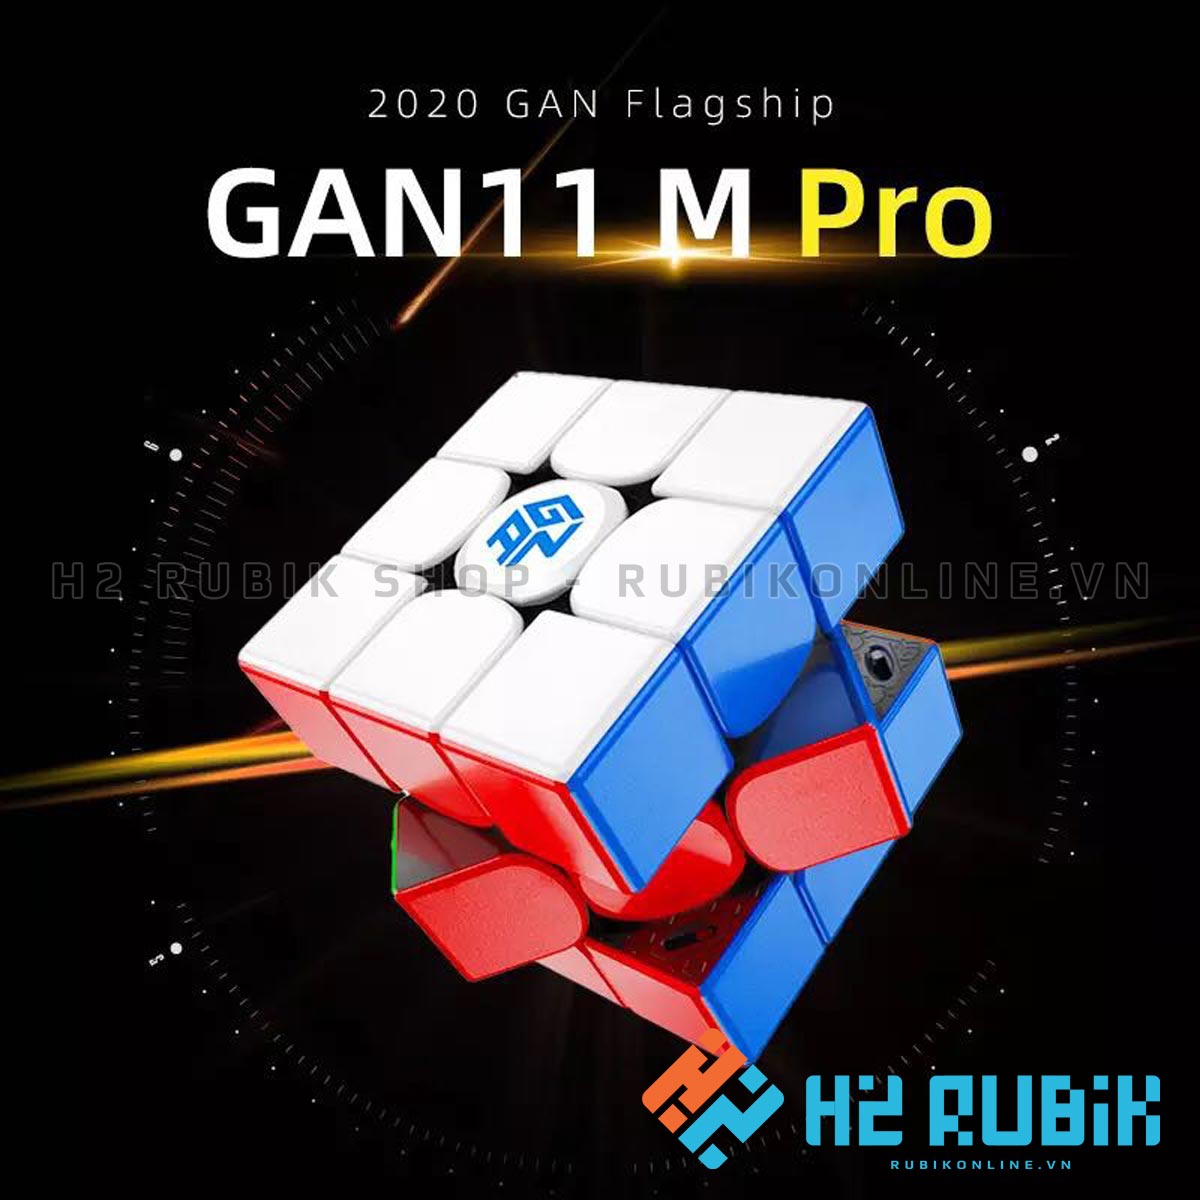 GAN 11 M PRO Rubik 3x3 flagship hãng GAN 2020 H2 Rubik Shop